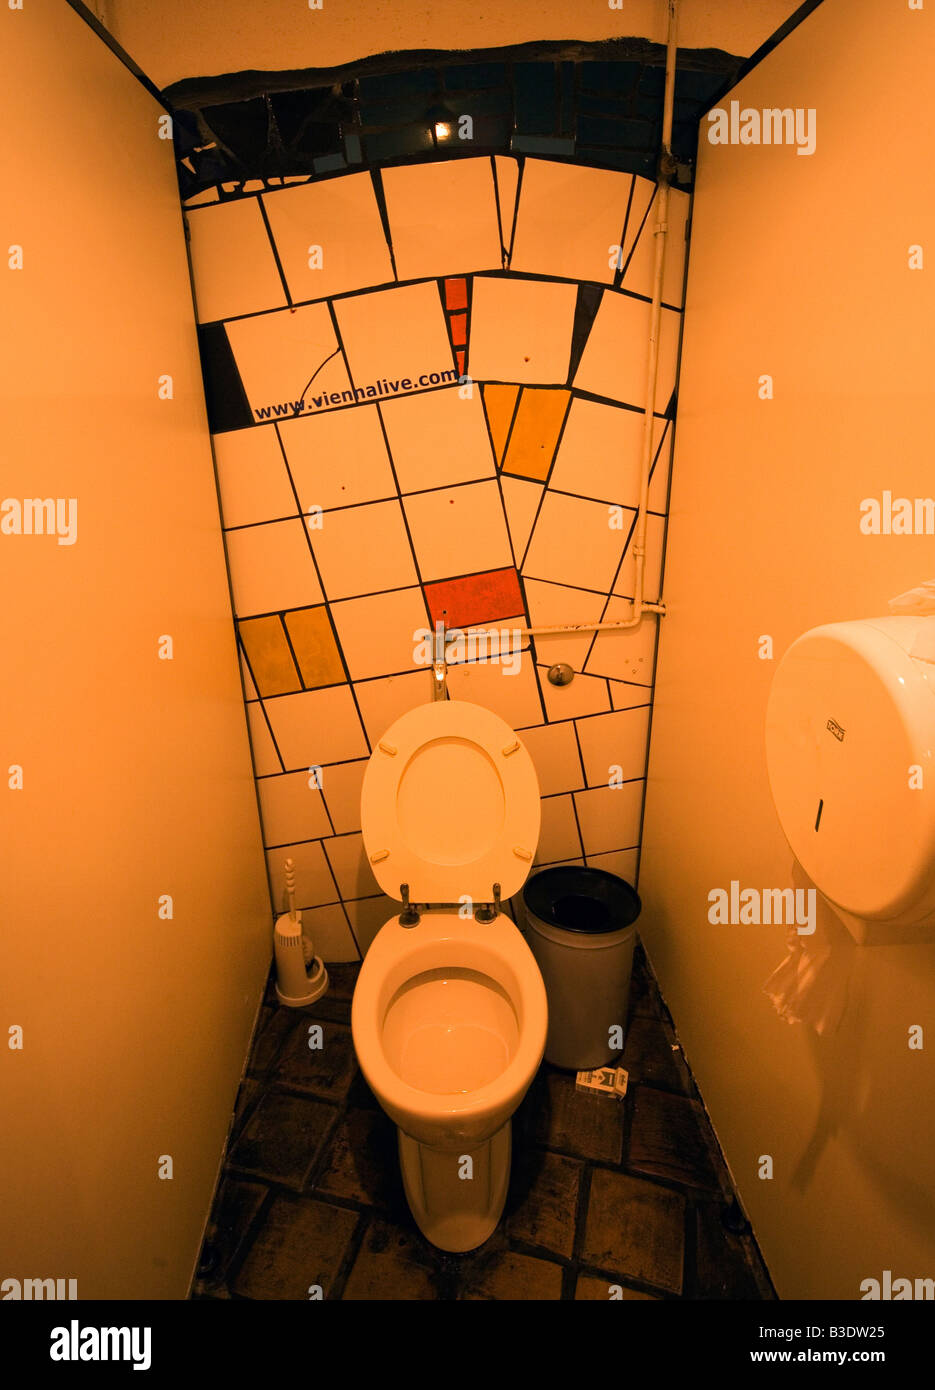 Austria Vienna Modern Art toilet Hundertwasser style Stock Photo